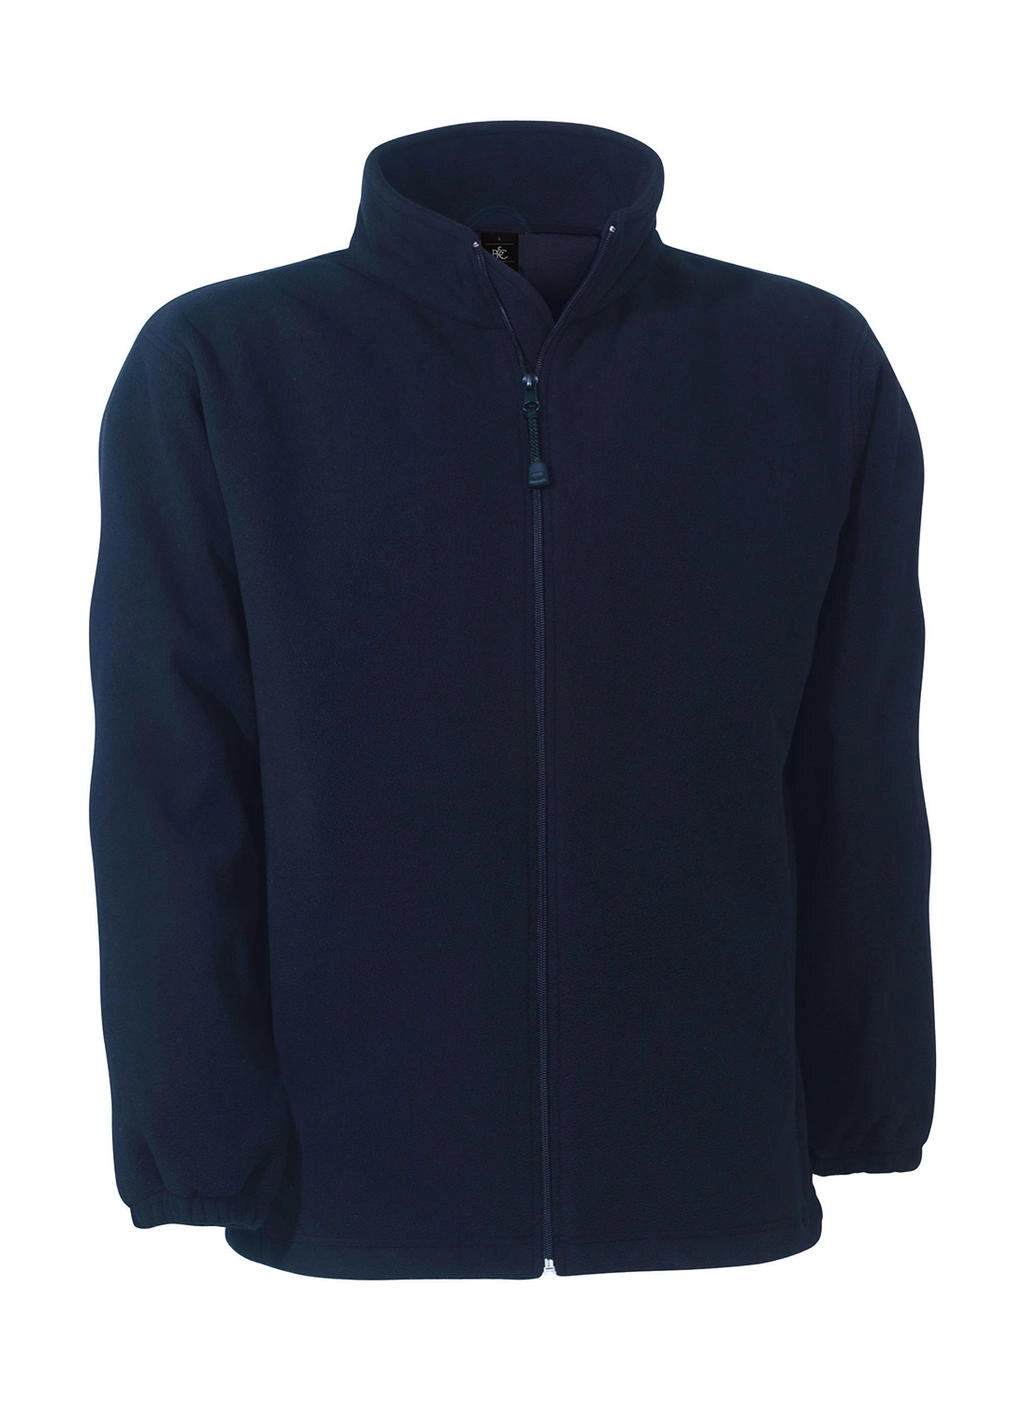 WindProtek Waterproof Fleece Jacket zum Besticken und Bedrucken in der Farbe Navy mit Ihren Logo, Schriftzug oder Motiv.